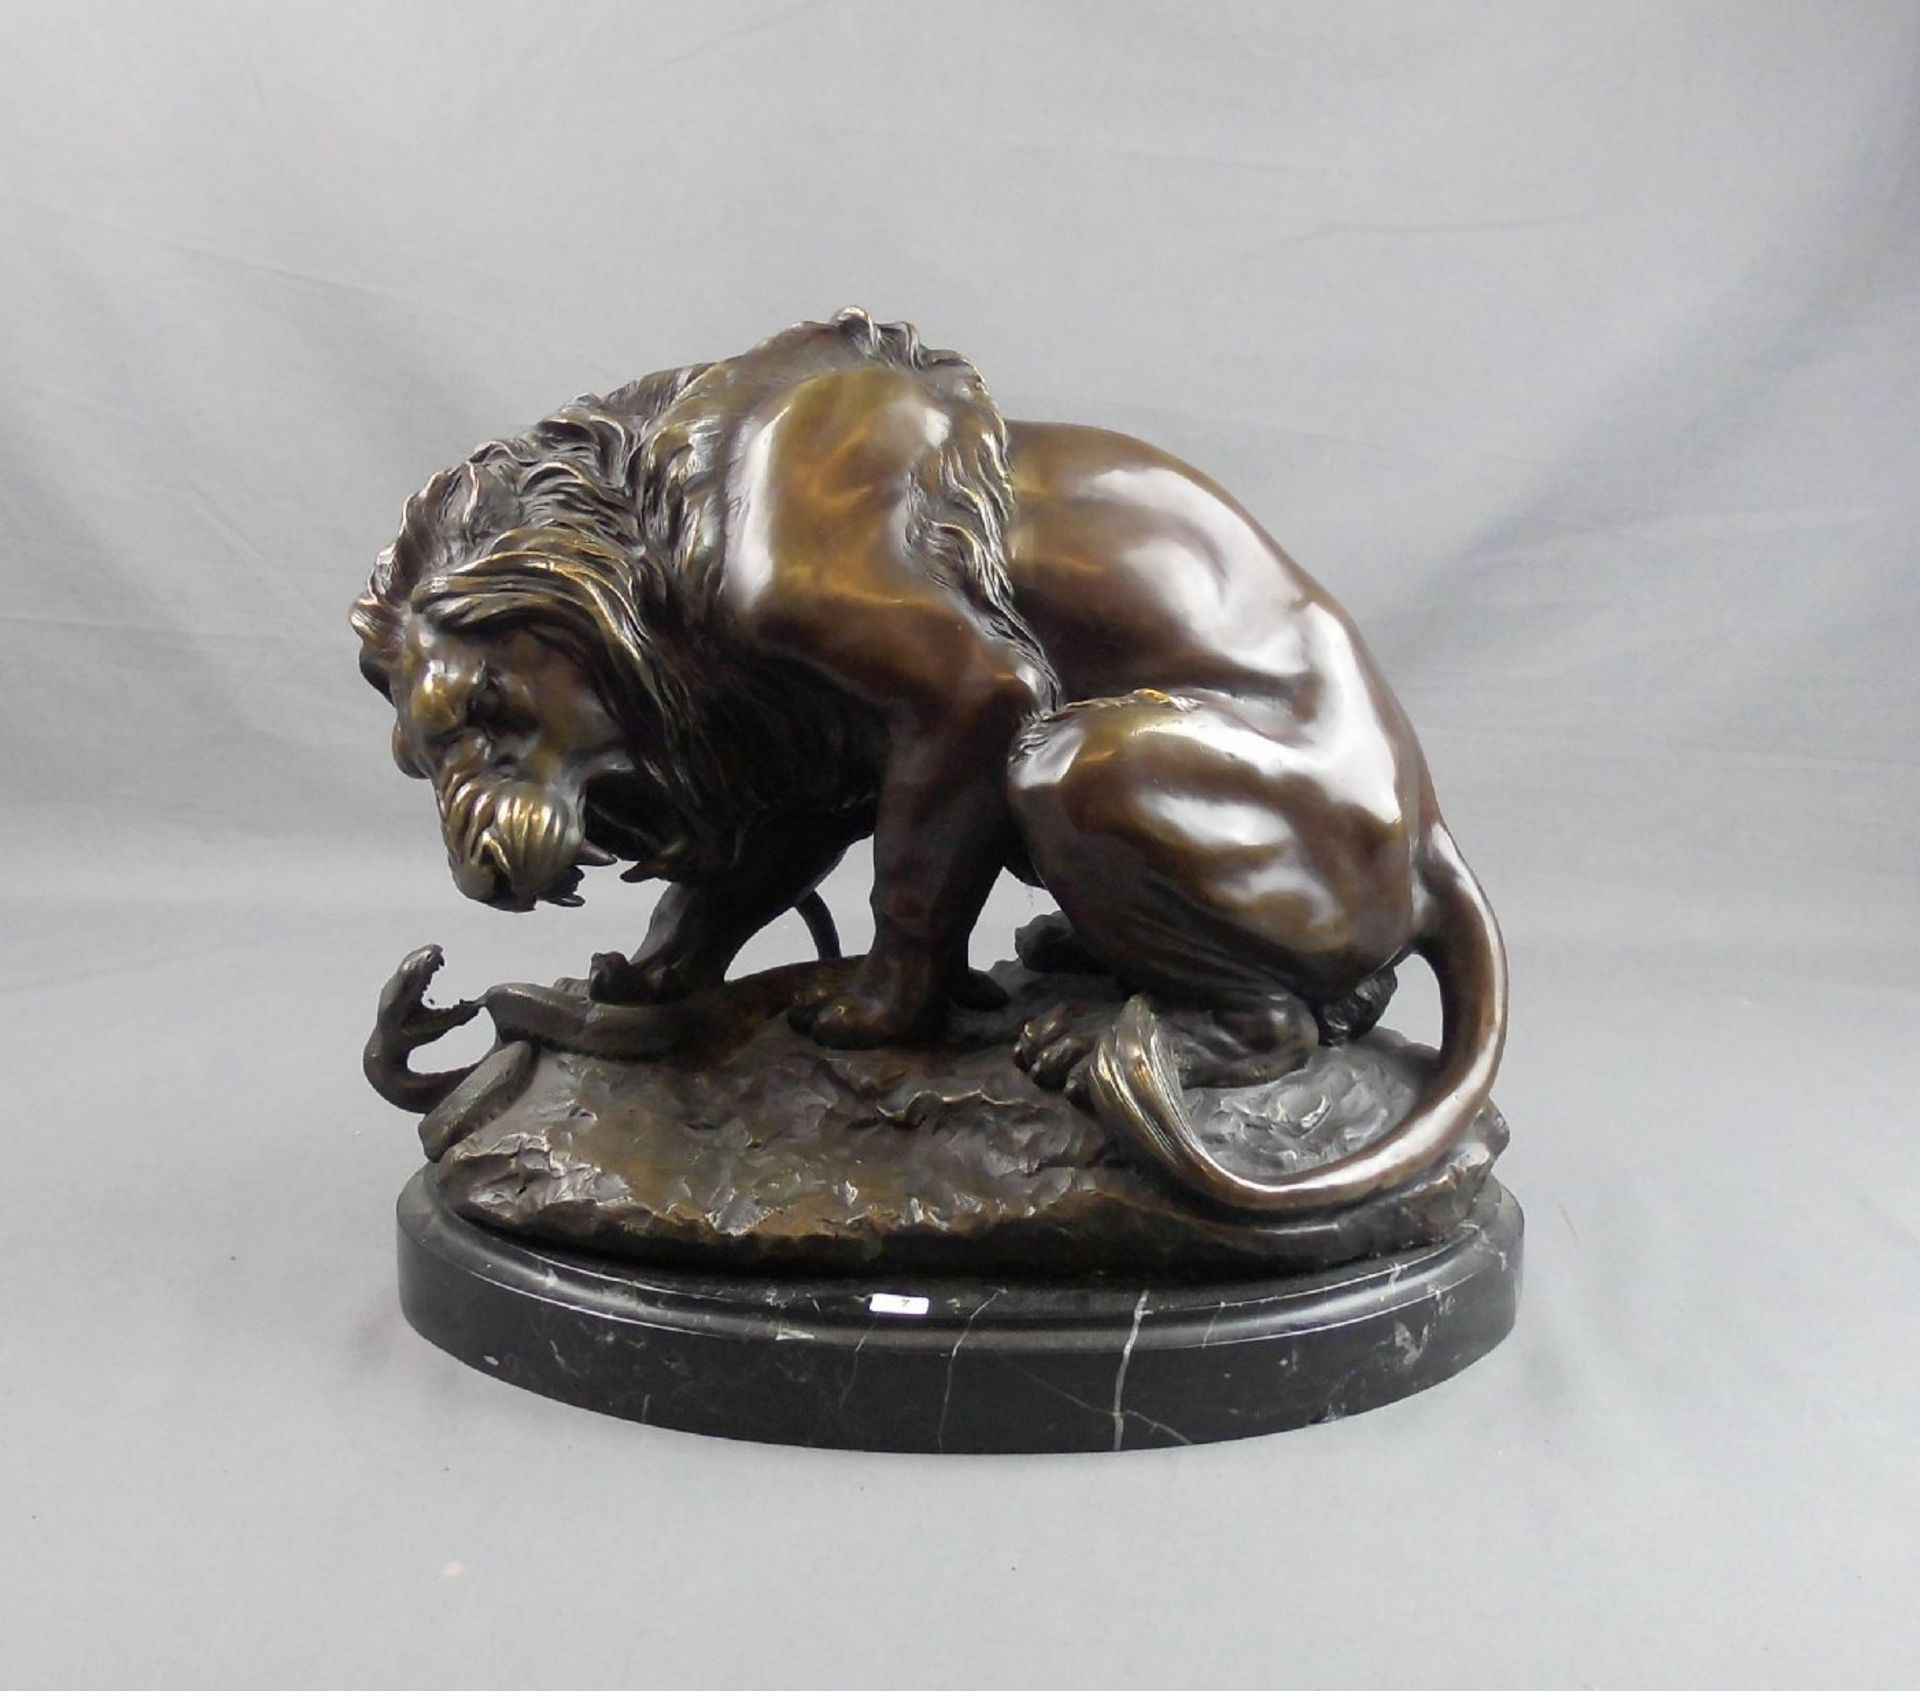 nach BAYRE, ANTOINE LOUIS (1795-1875), Skulptur: "Löwe im Kampf mit einer Schlange" (